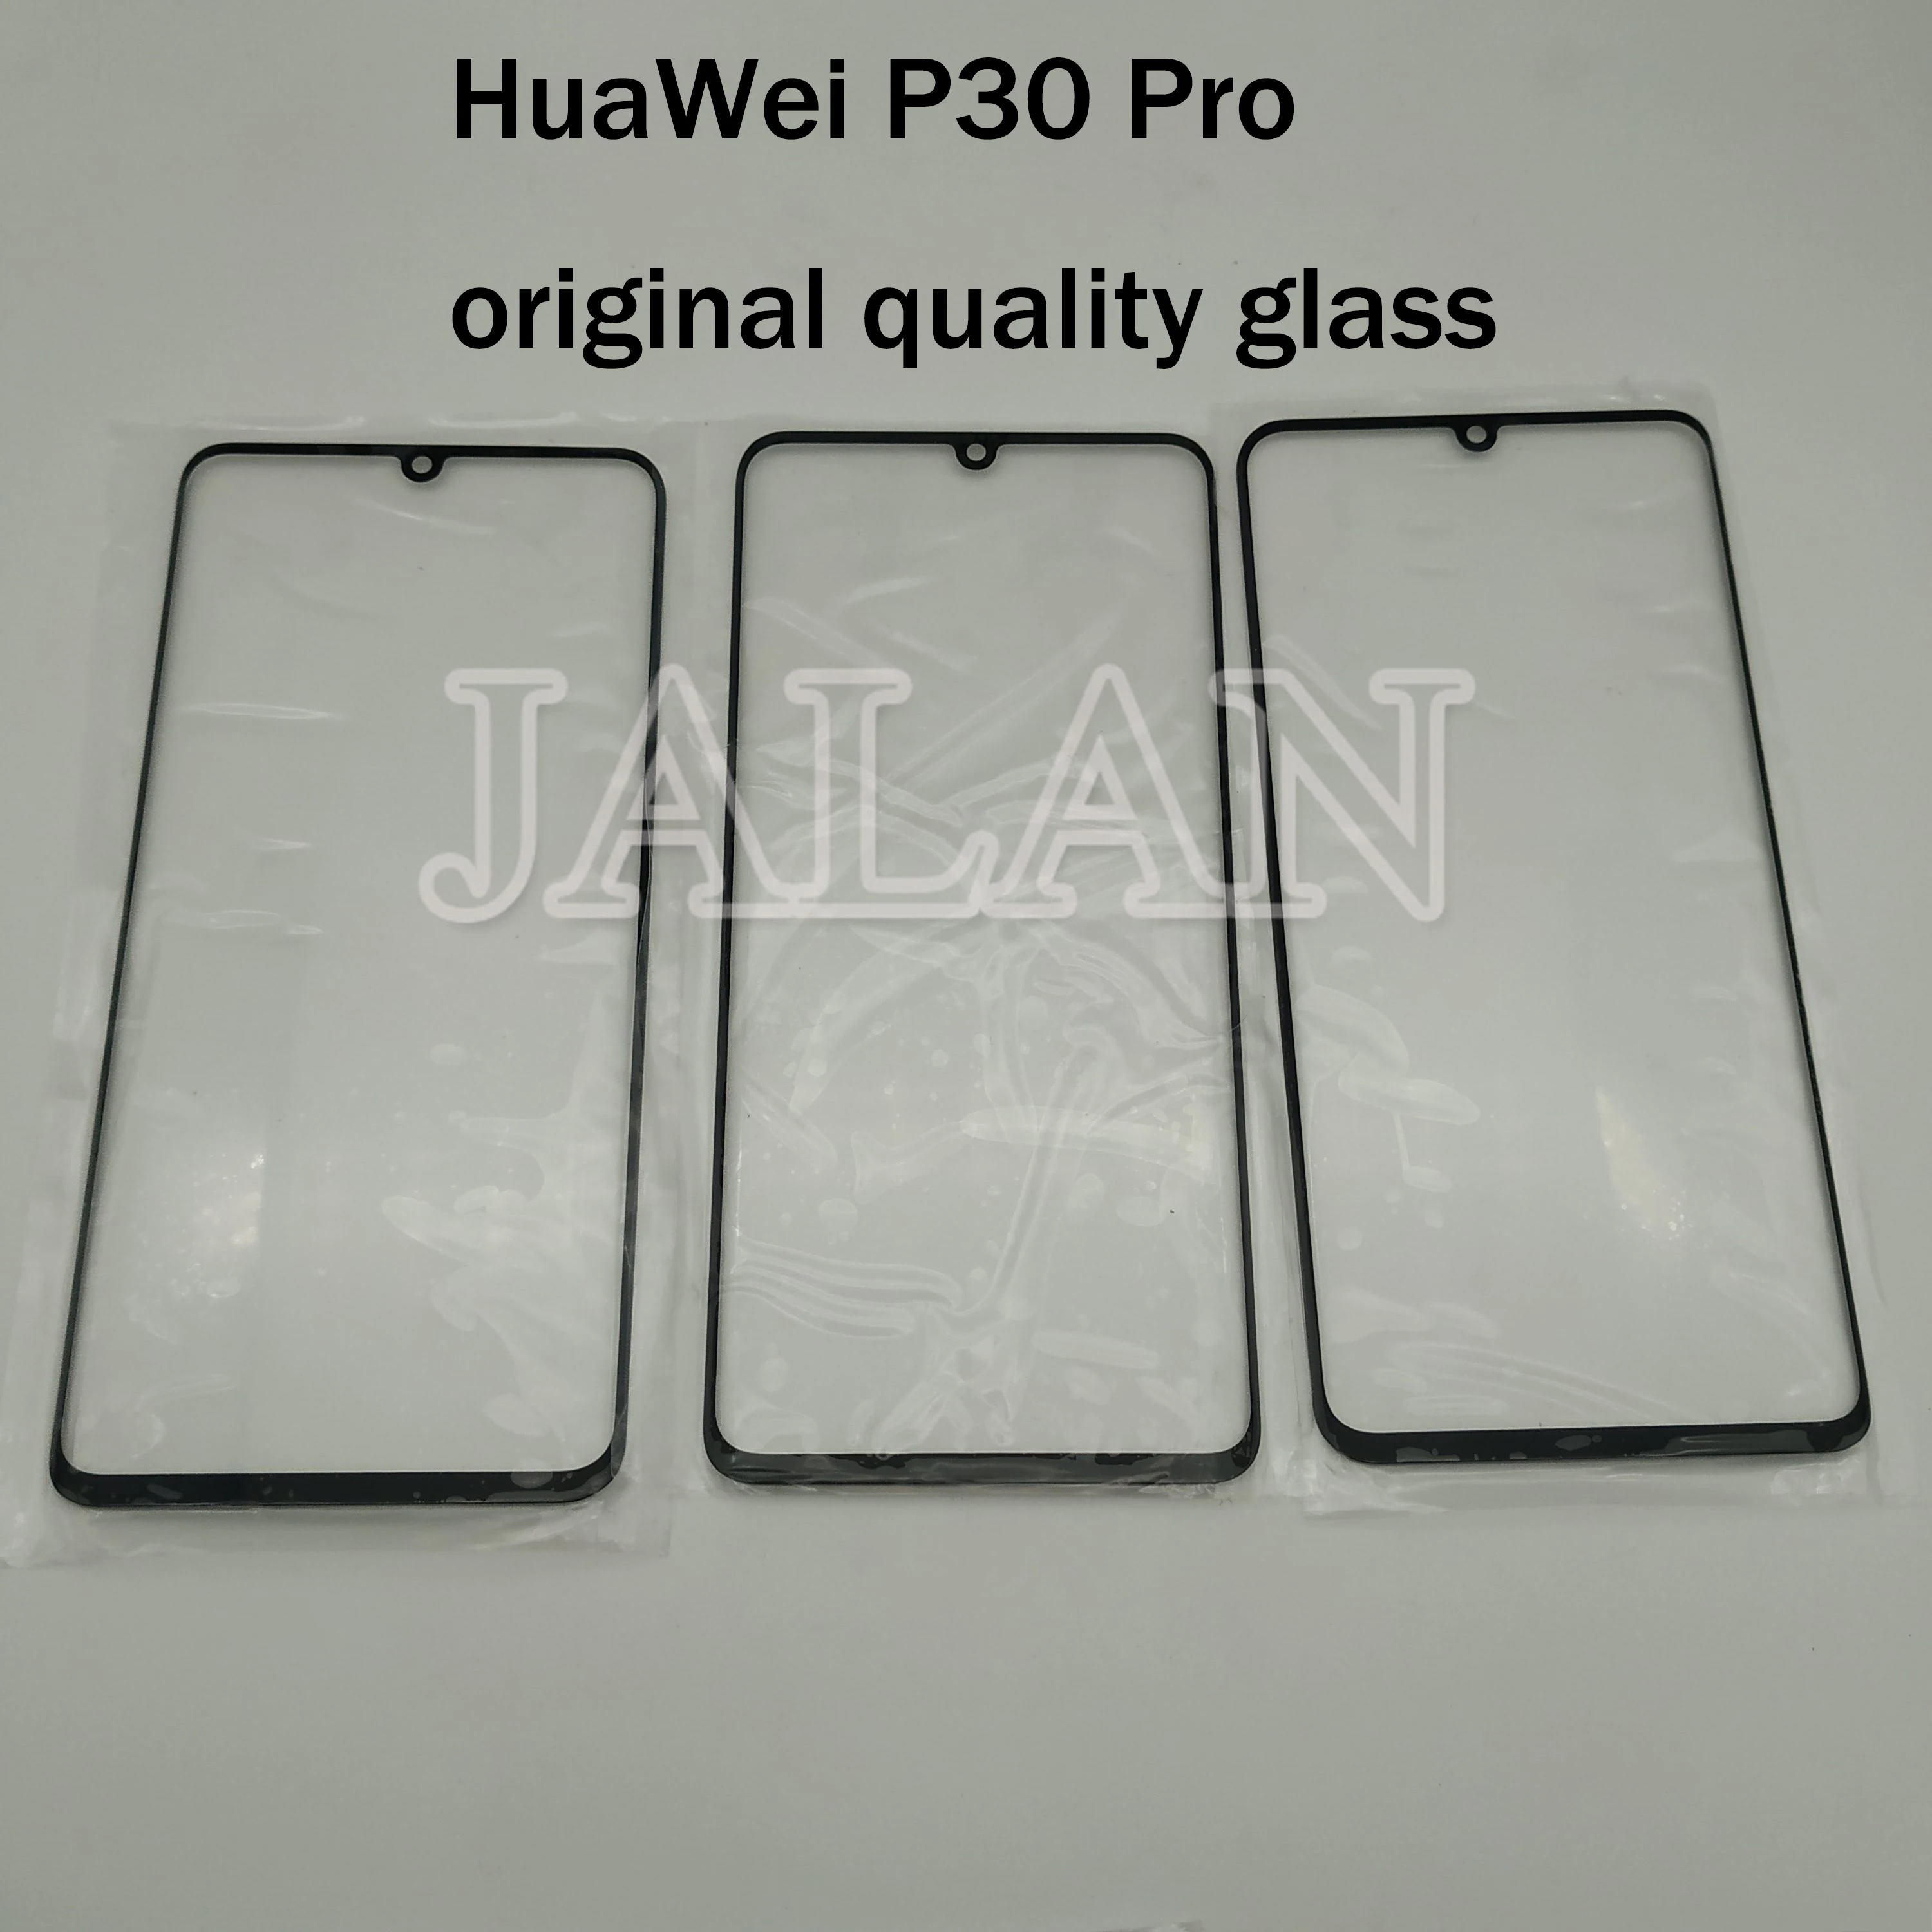 

Оригинальное качественное защитное стекло 1/4 ''для HuaWei P30 Pro мобильный телефон, замена изогнутой панели, ремонт стекла, 1 шт.